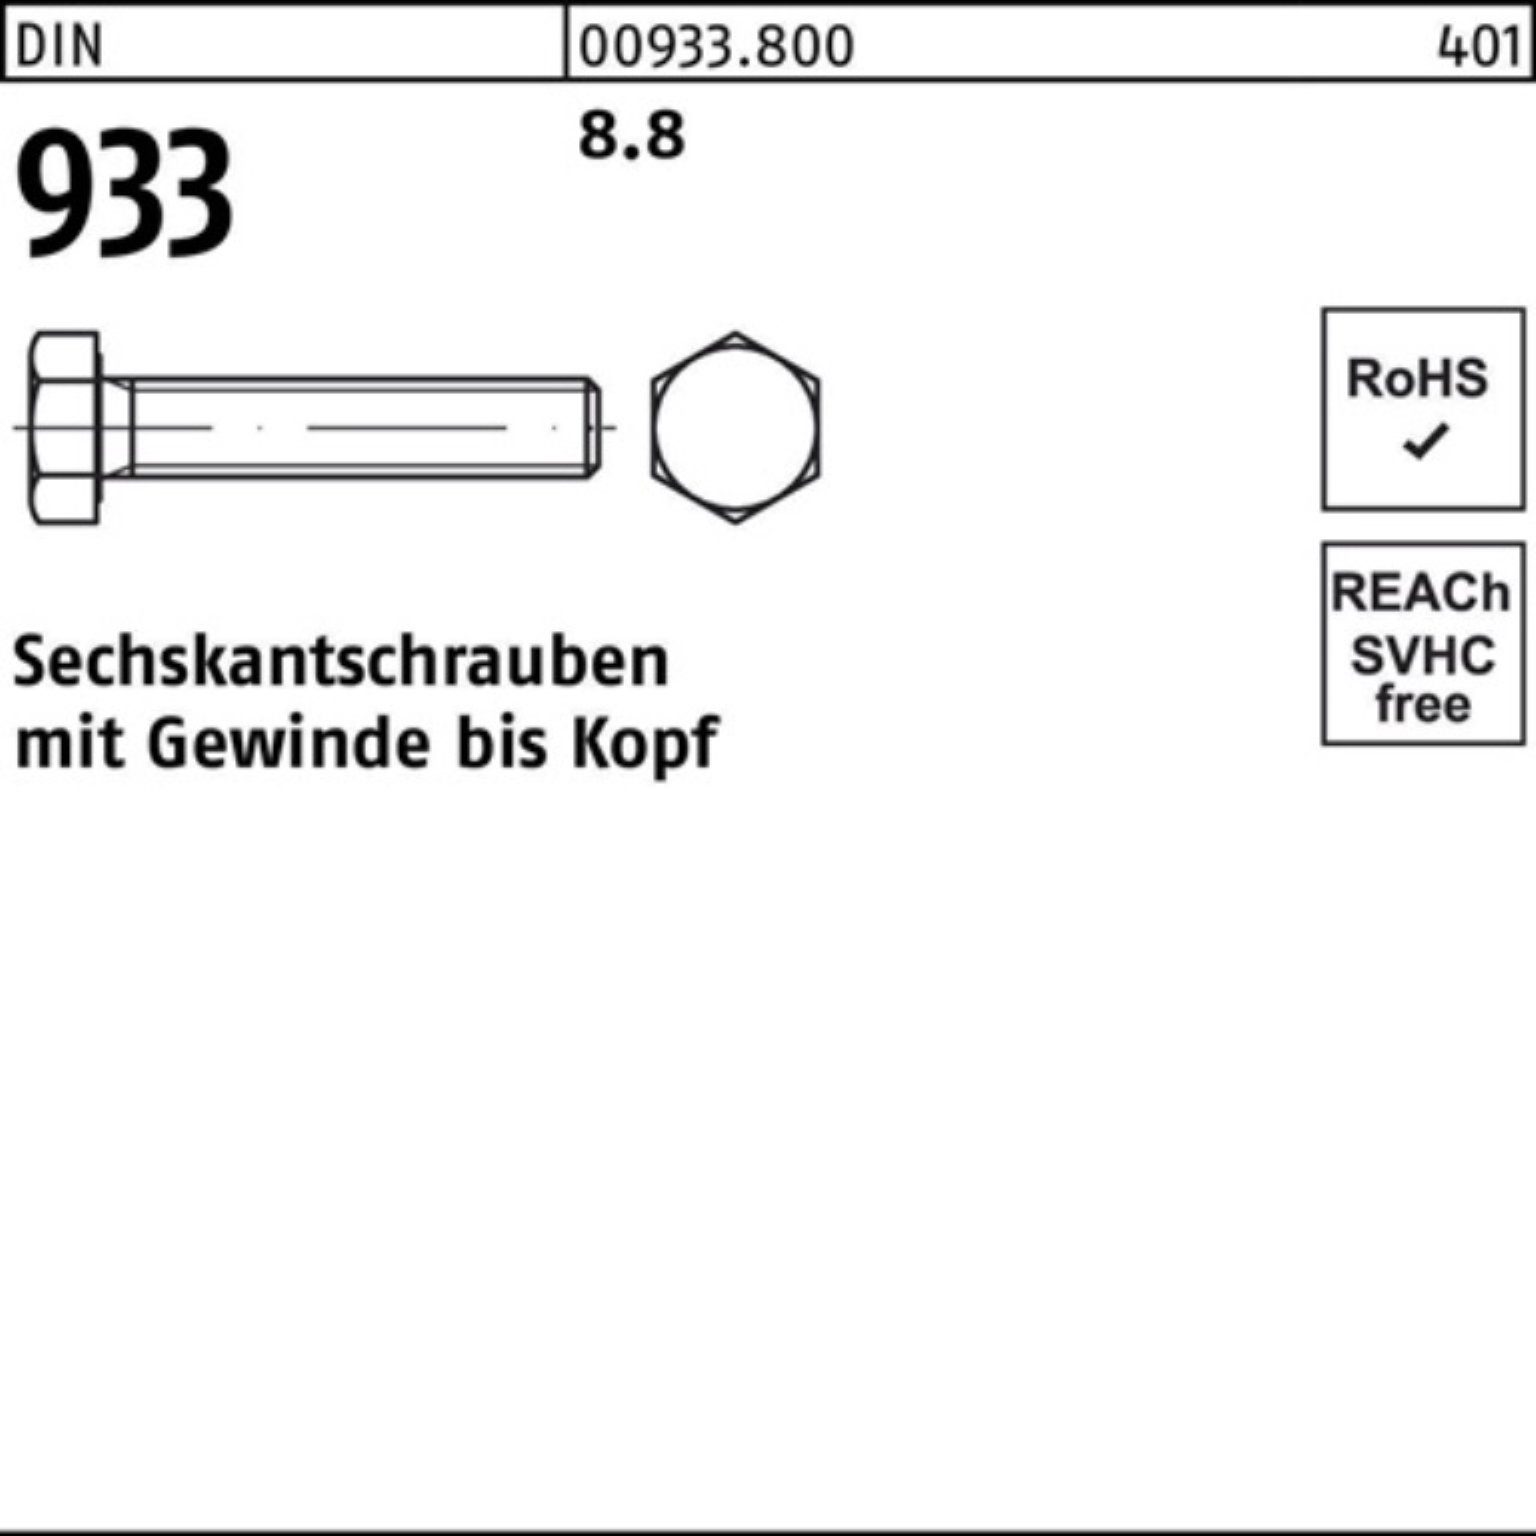 Reyher Sechskantschraube 100er Pack 933 8.8 50 M12x DIN 933 VG Stück Sechskantschraube DIN 120